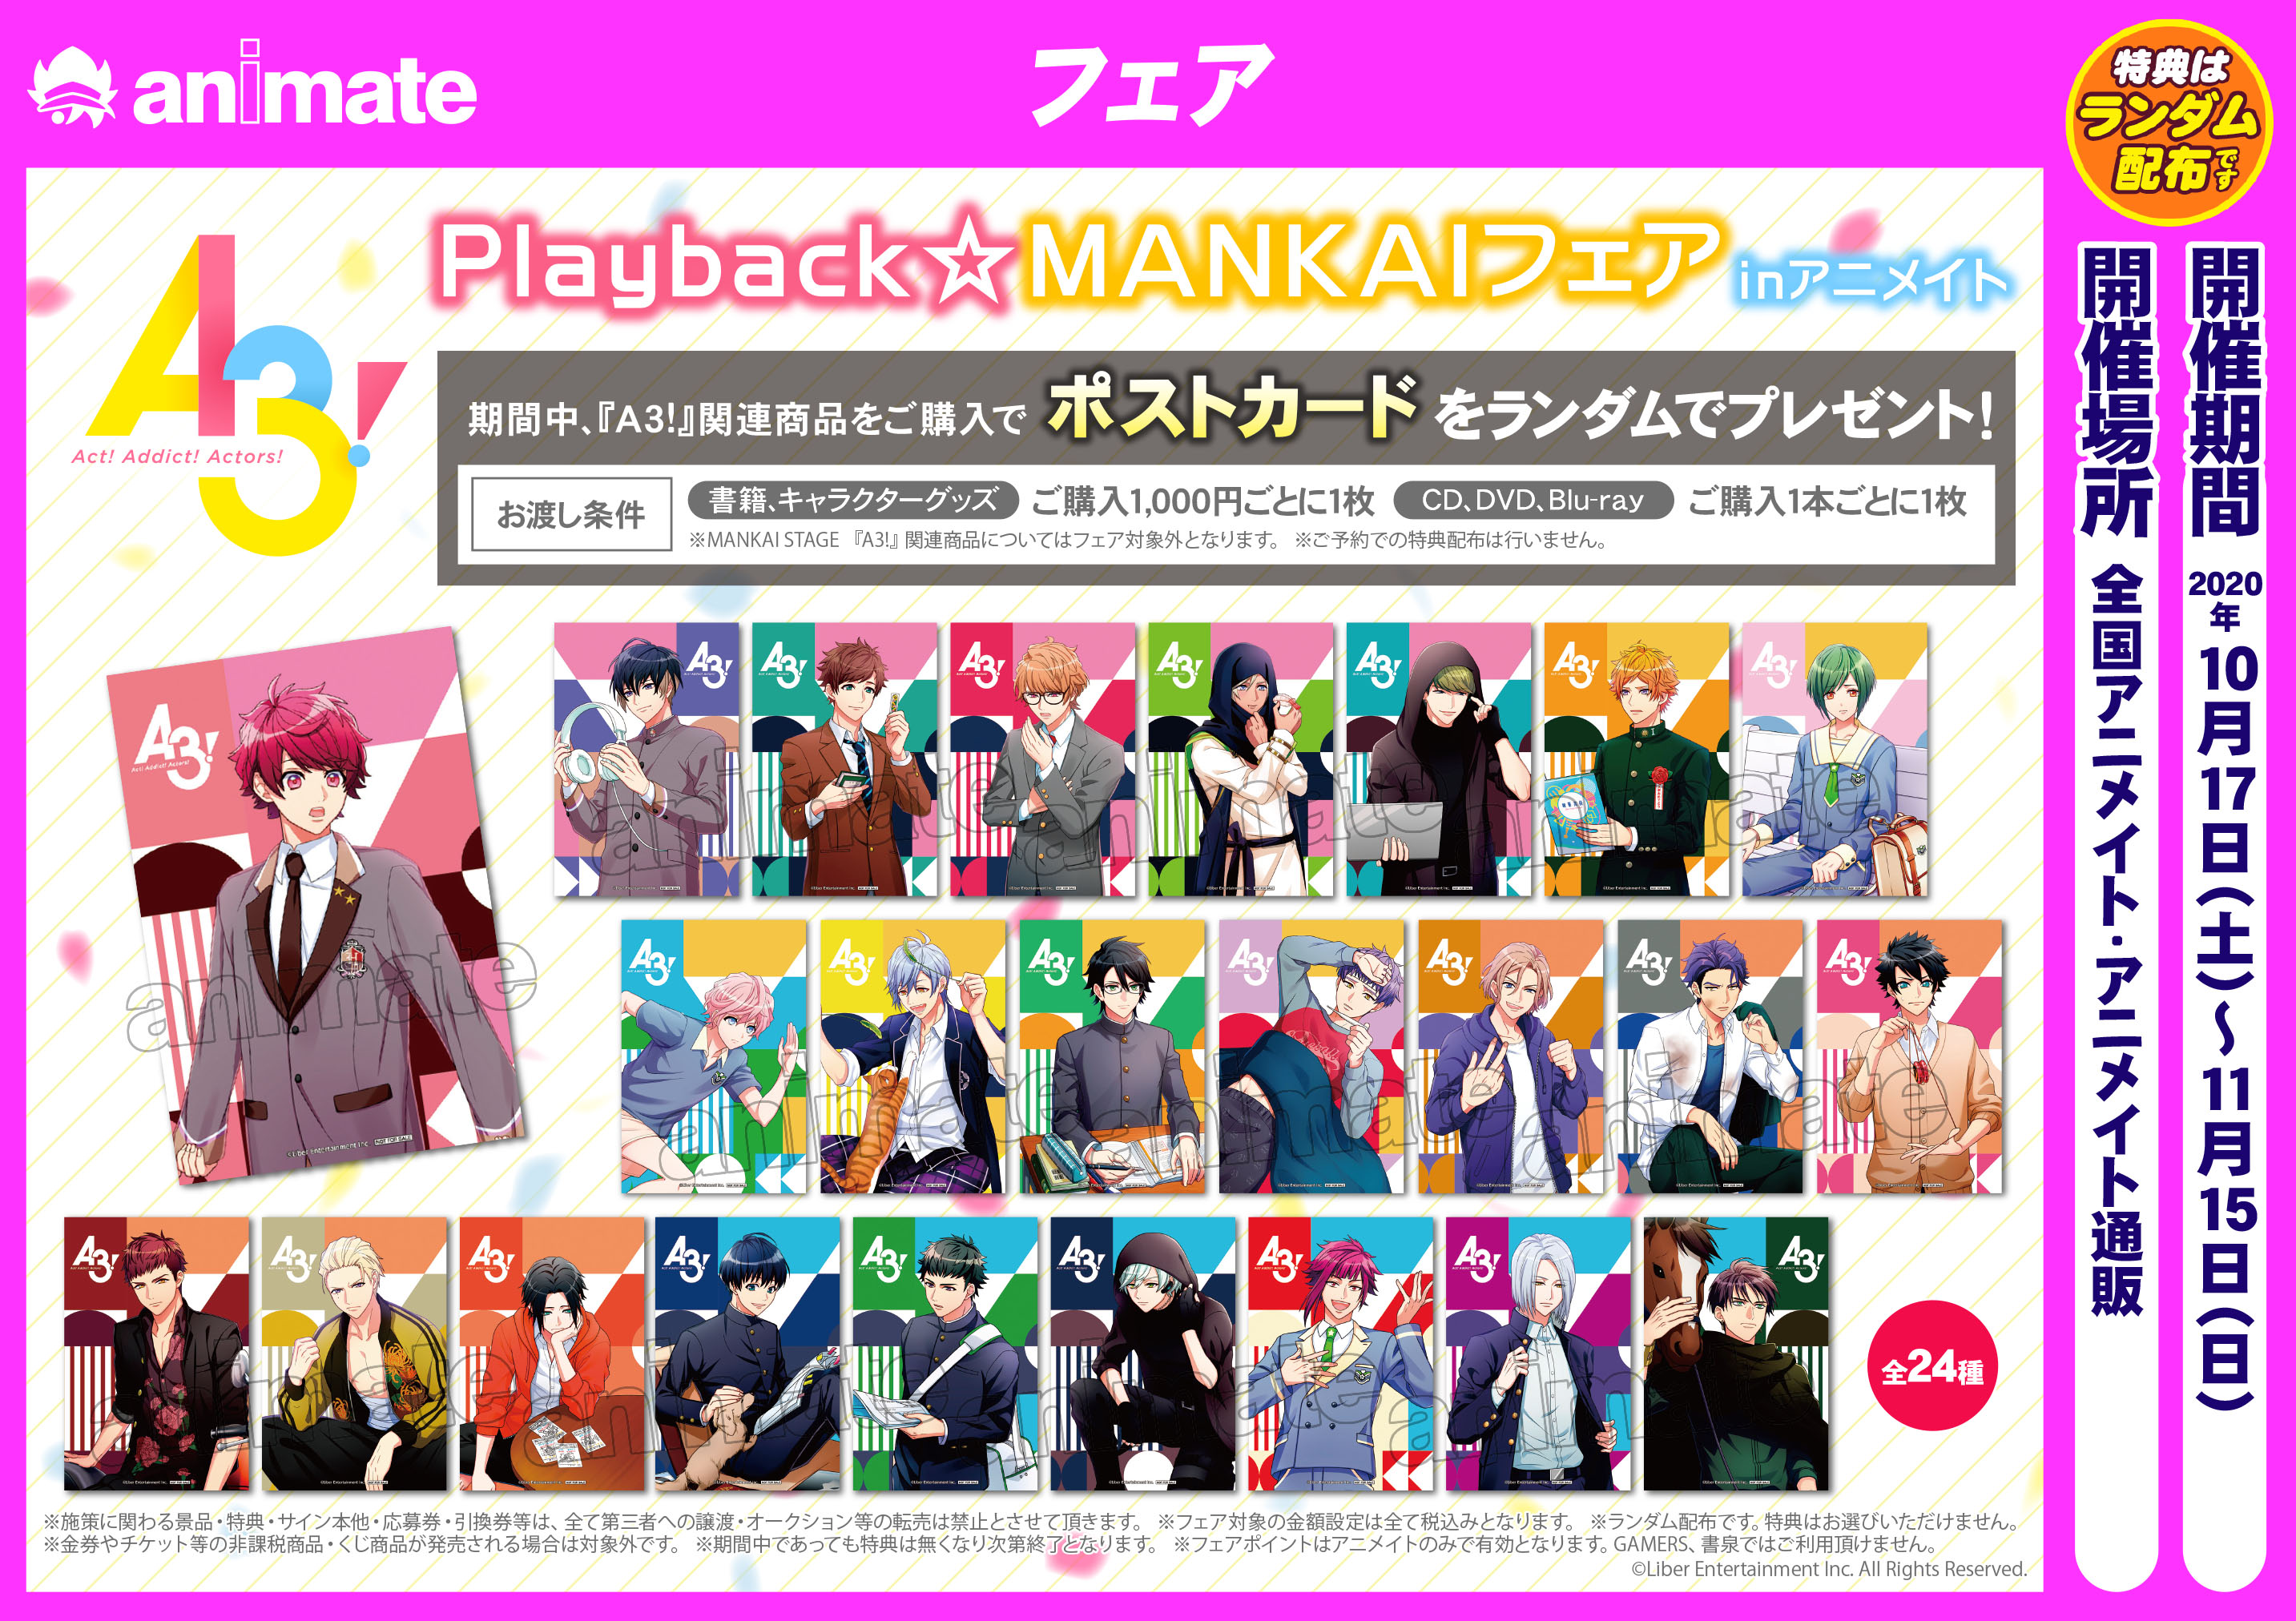 A3!』Playback☆MANKAIフェア inアニメイト - アニメイト岡山